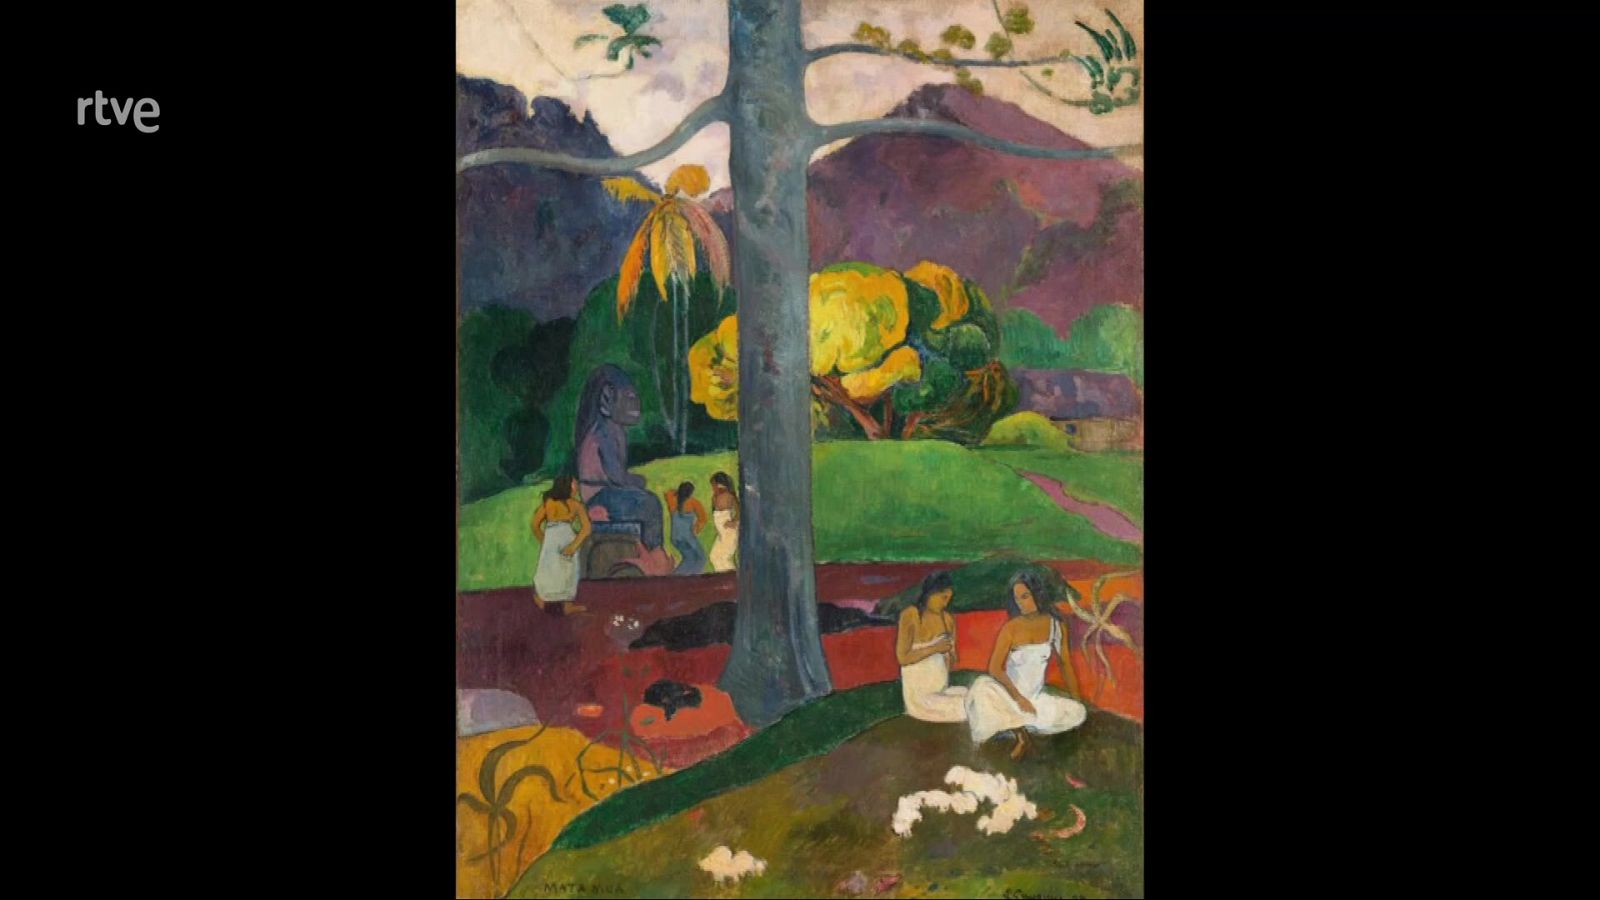 La aventura del saber - La historia de Mata Mua, de Paul Gauguin - ver ahora